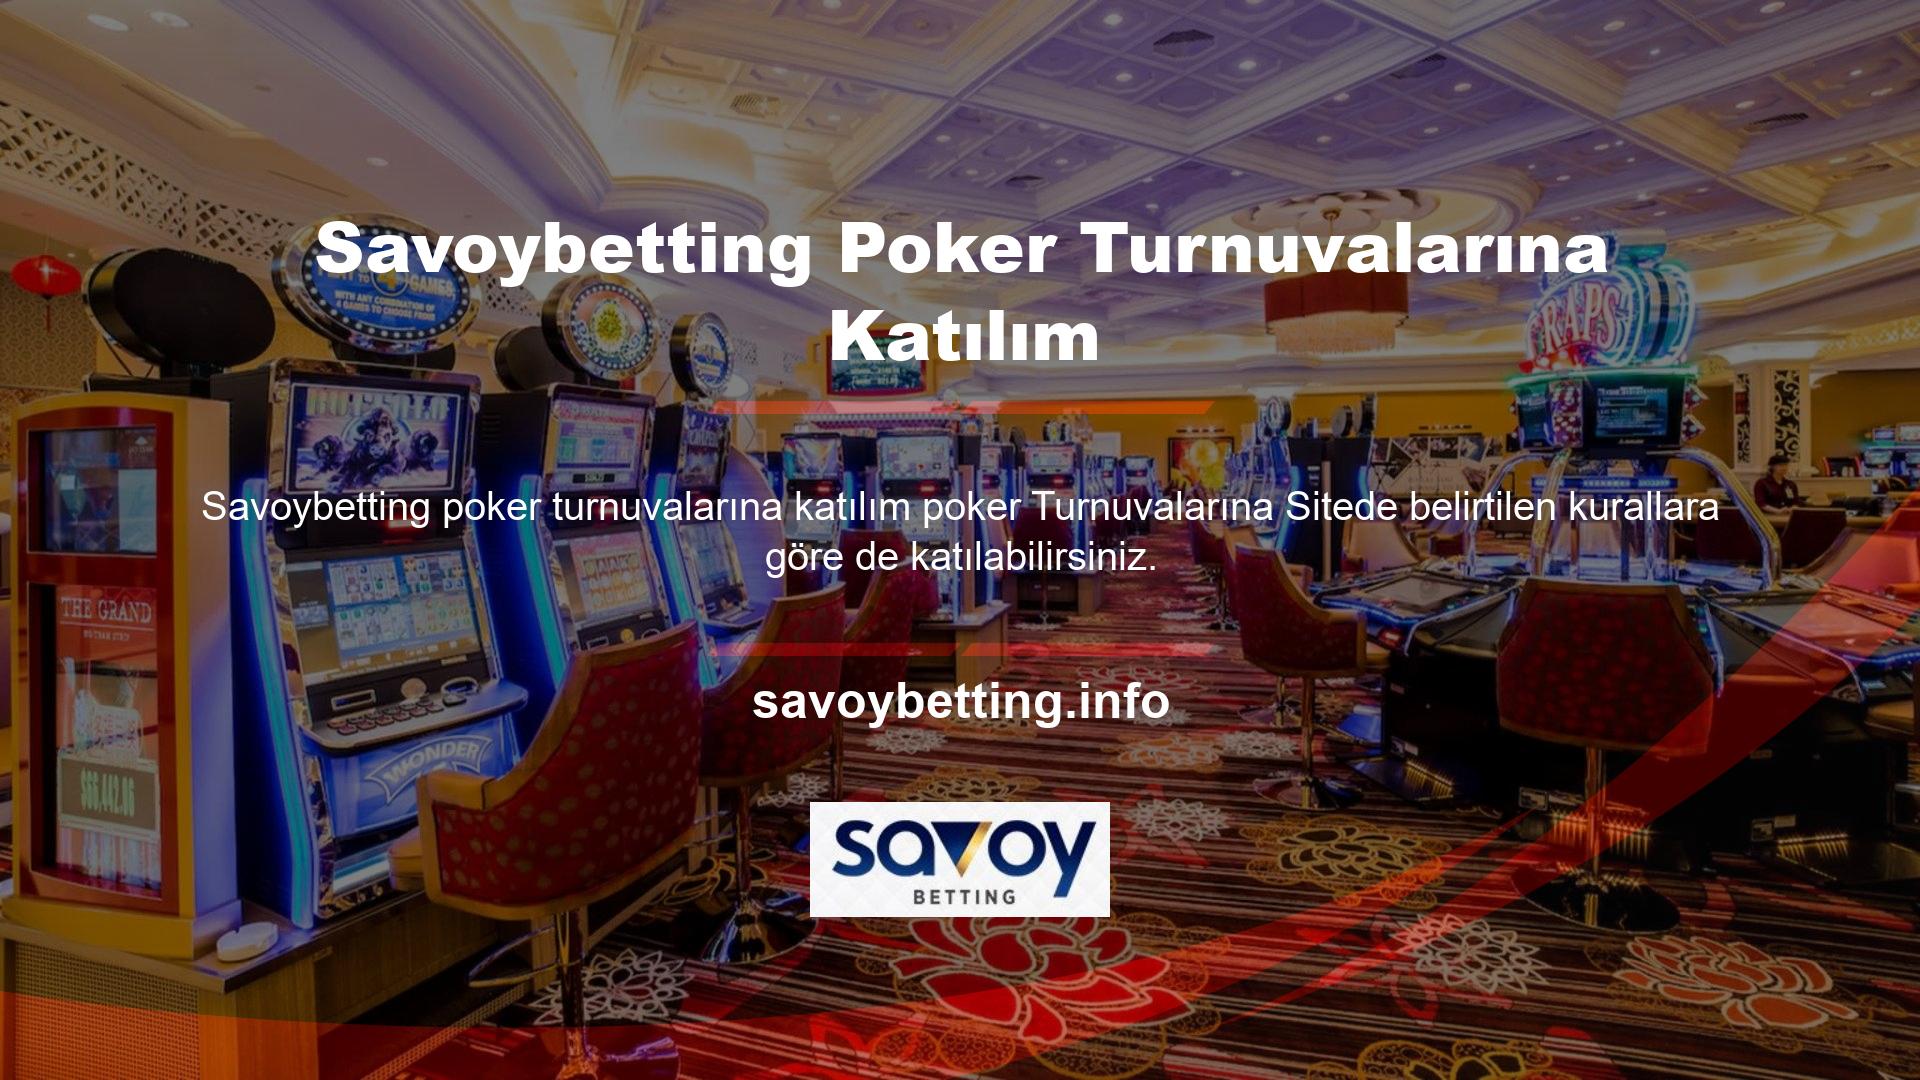 Poker turnuvaları, kullanıcılara minimum giriş ücreti ödedikten sonra dünyanın dört bir yanından deneyimli ve acemi poker oyuncularıyla sohbet etme hakkı verir